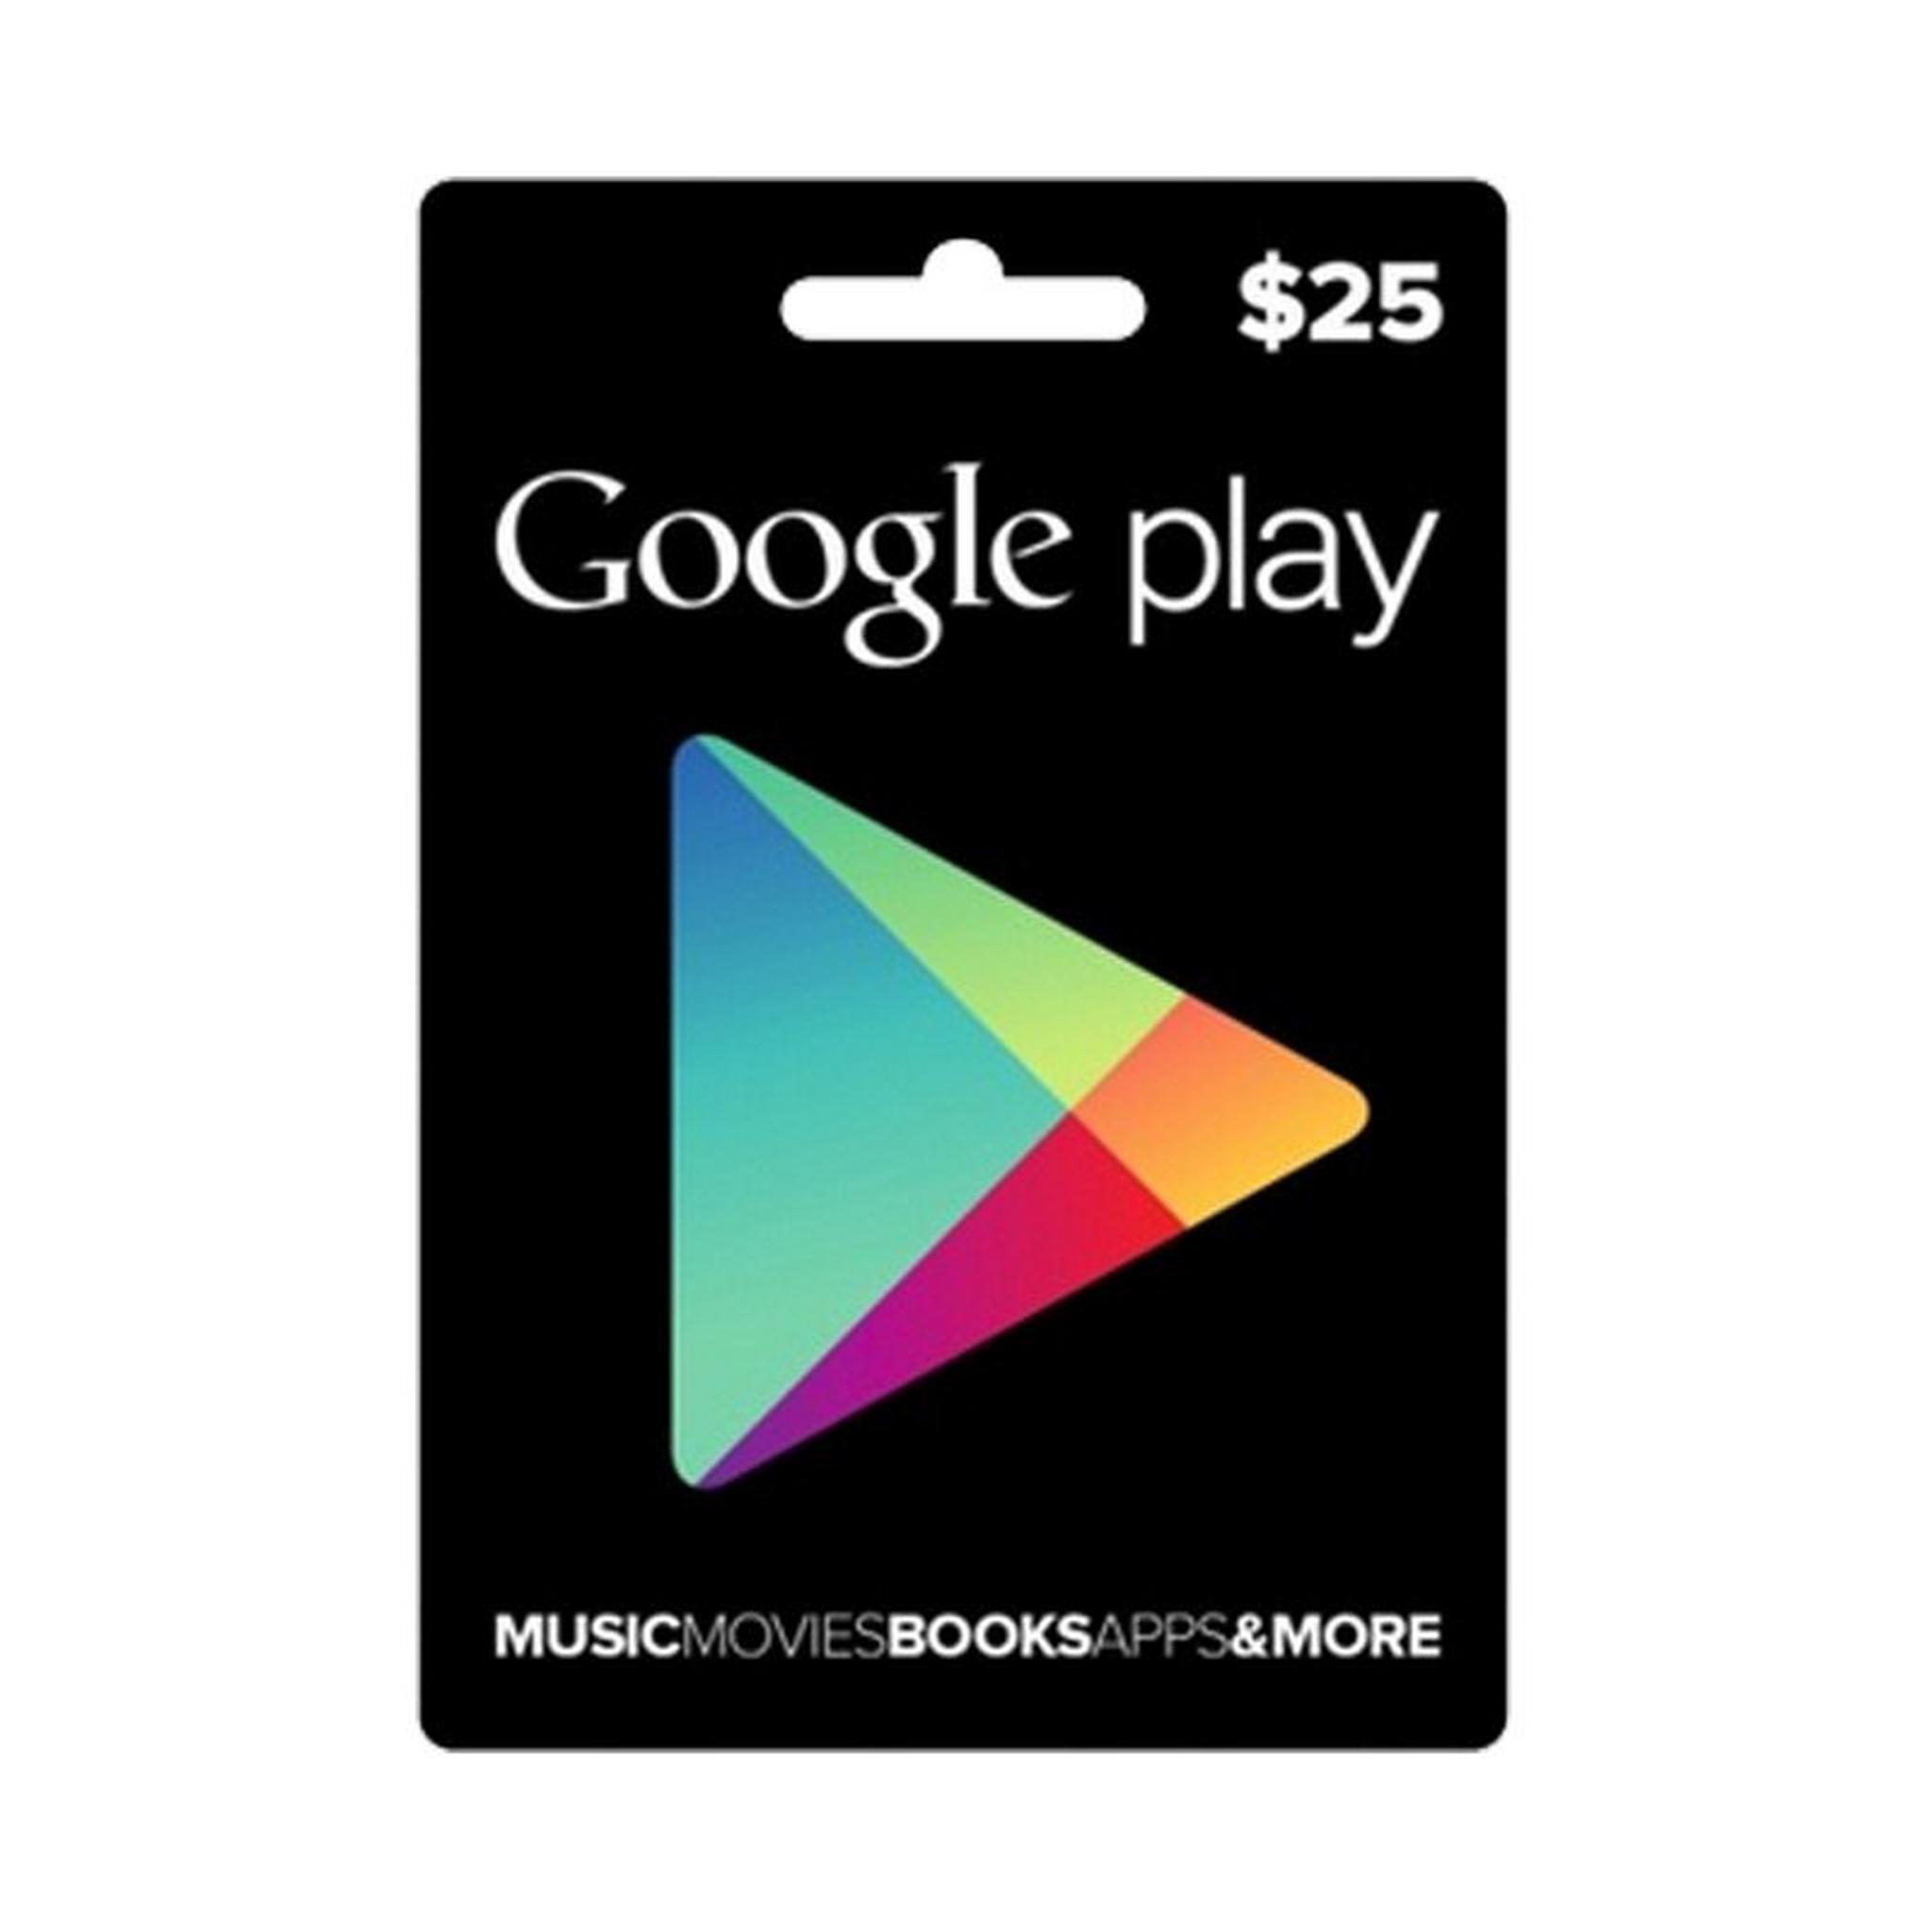 بطاقة جوجل بلاي الرقمية  - ٢٥ دولار (حساب أمريكي)